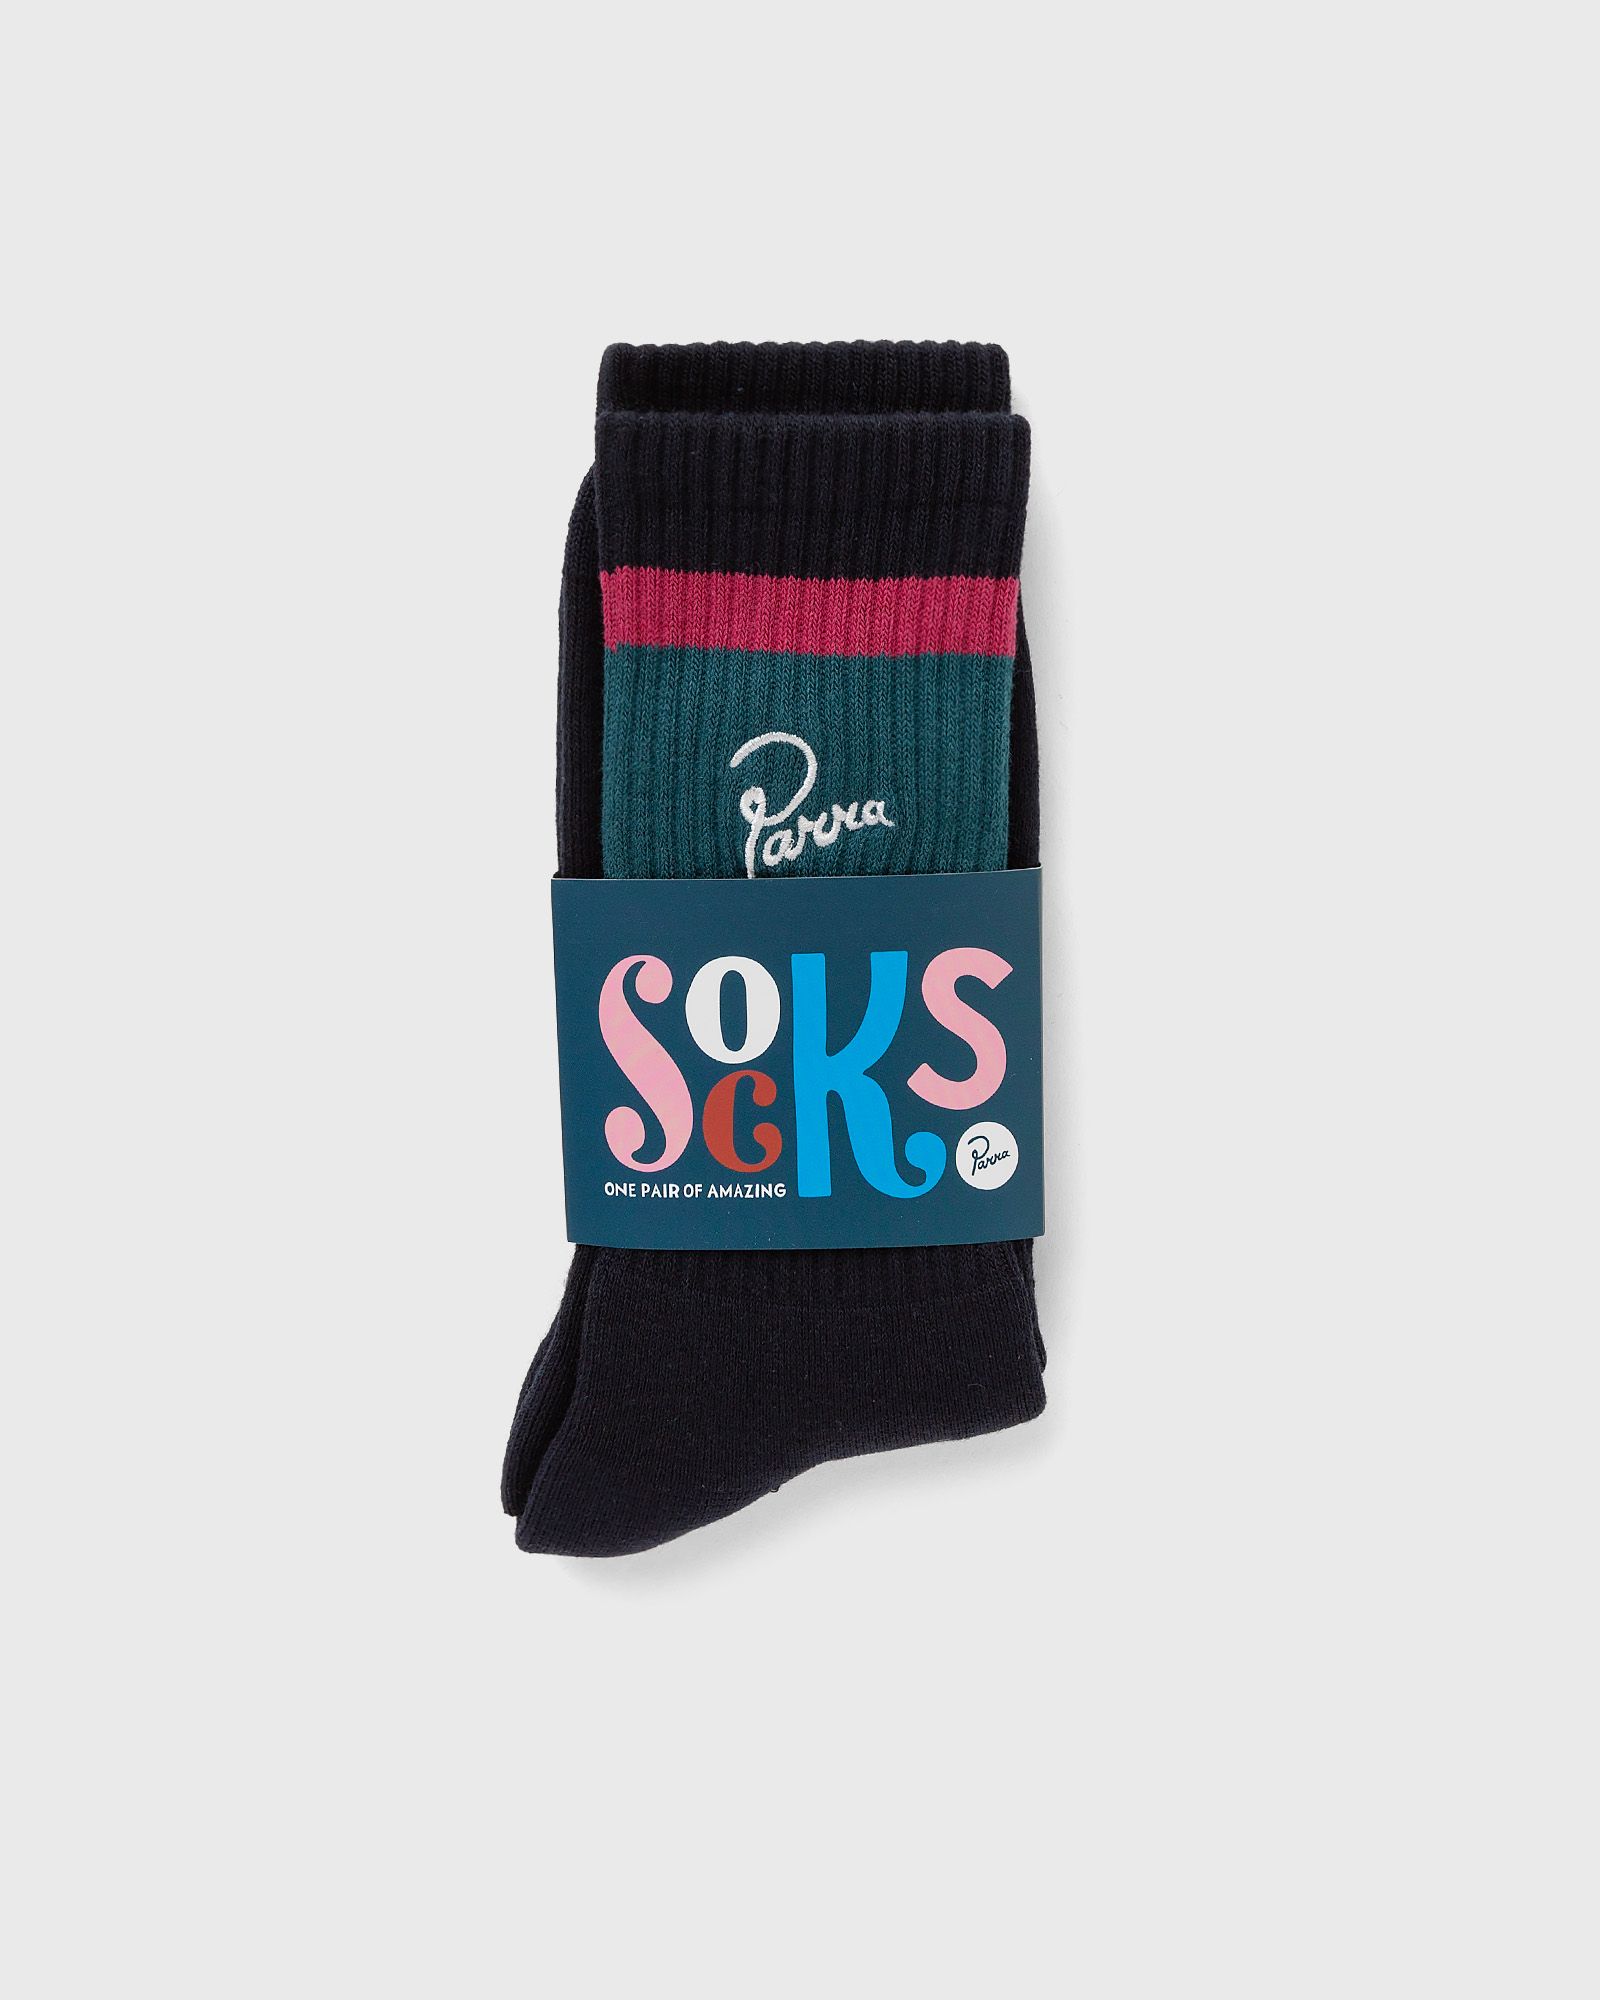 By Parra - script logo crew socks men socks blue in größe:one size